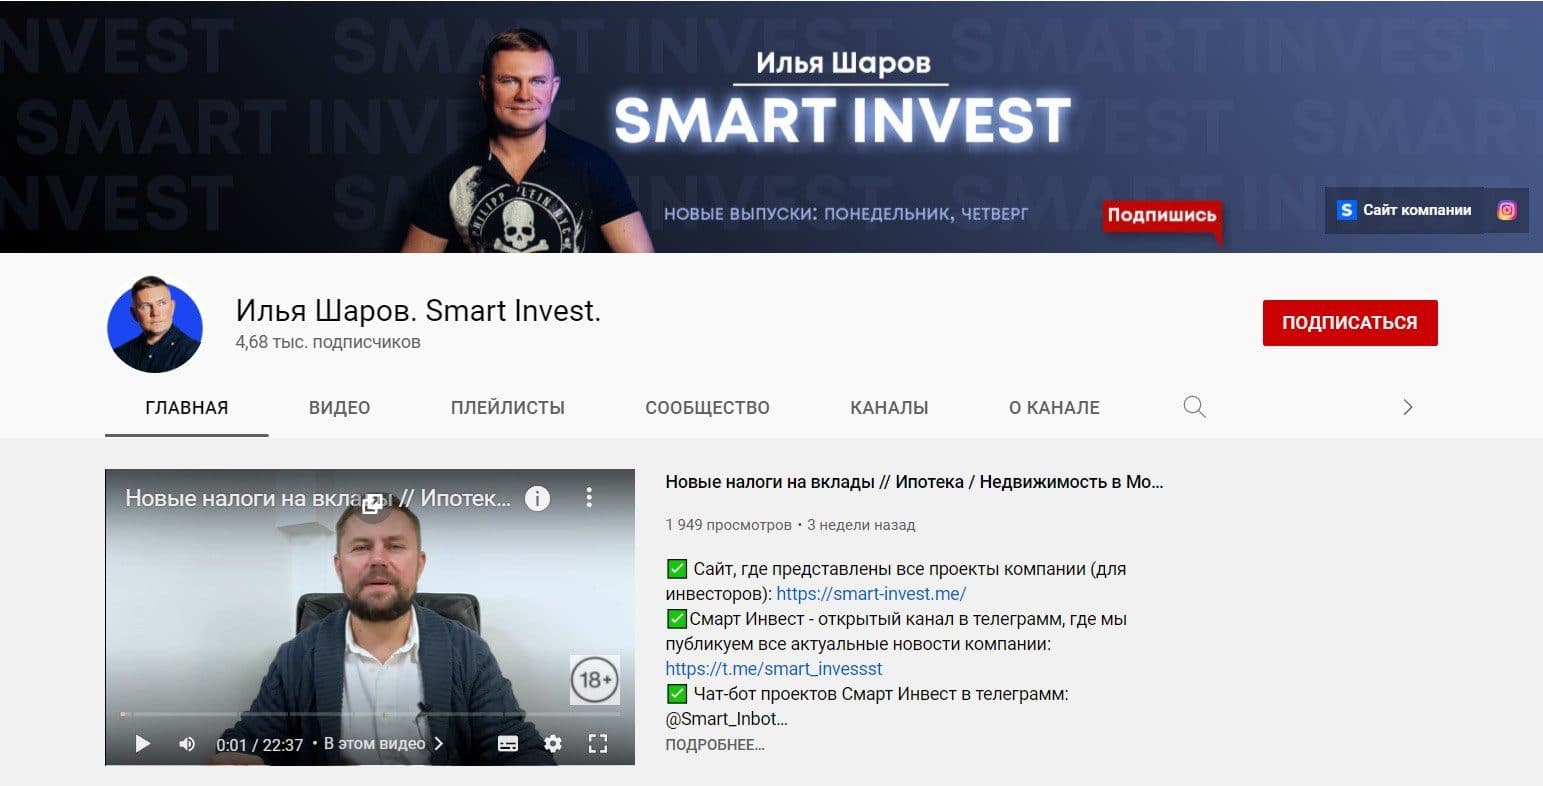 Ютуб-канал проекта Smart Invest